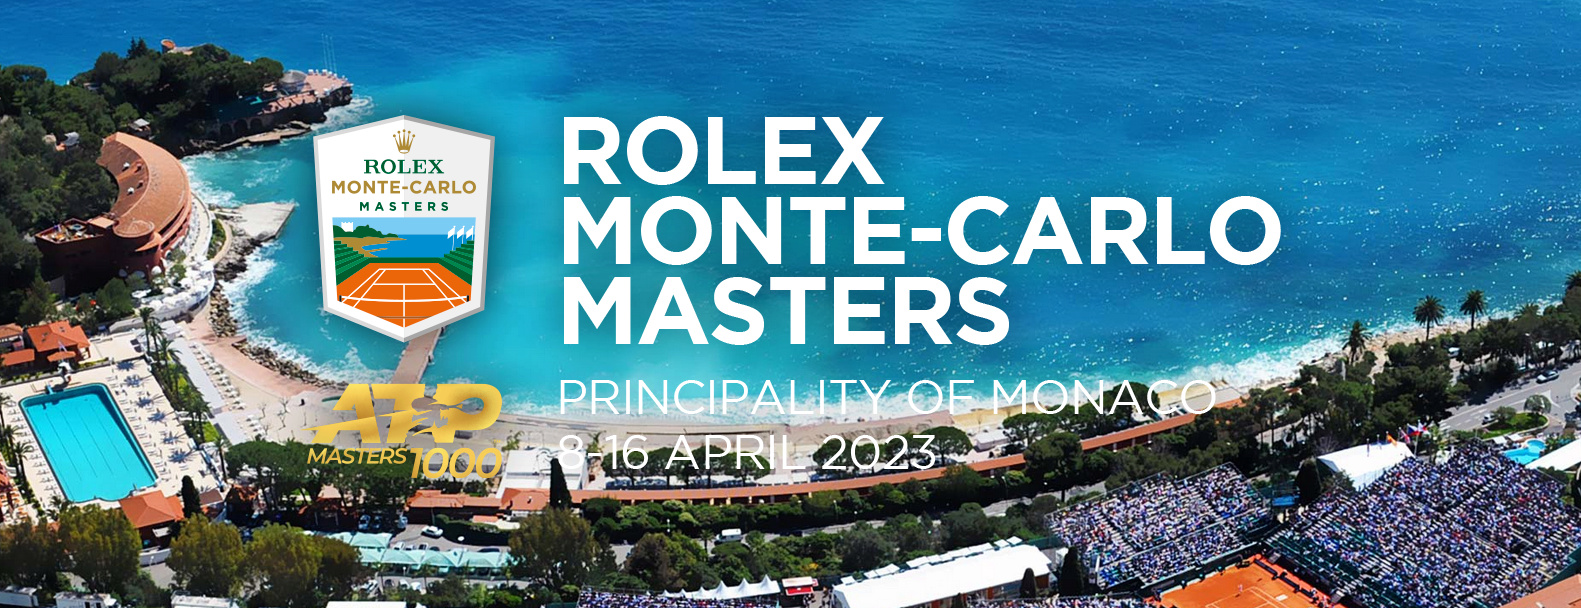 Masters 1000 - April 2023: Monte Carlo Mc_20212